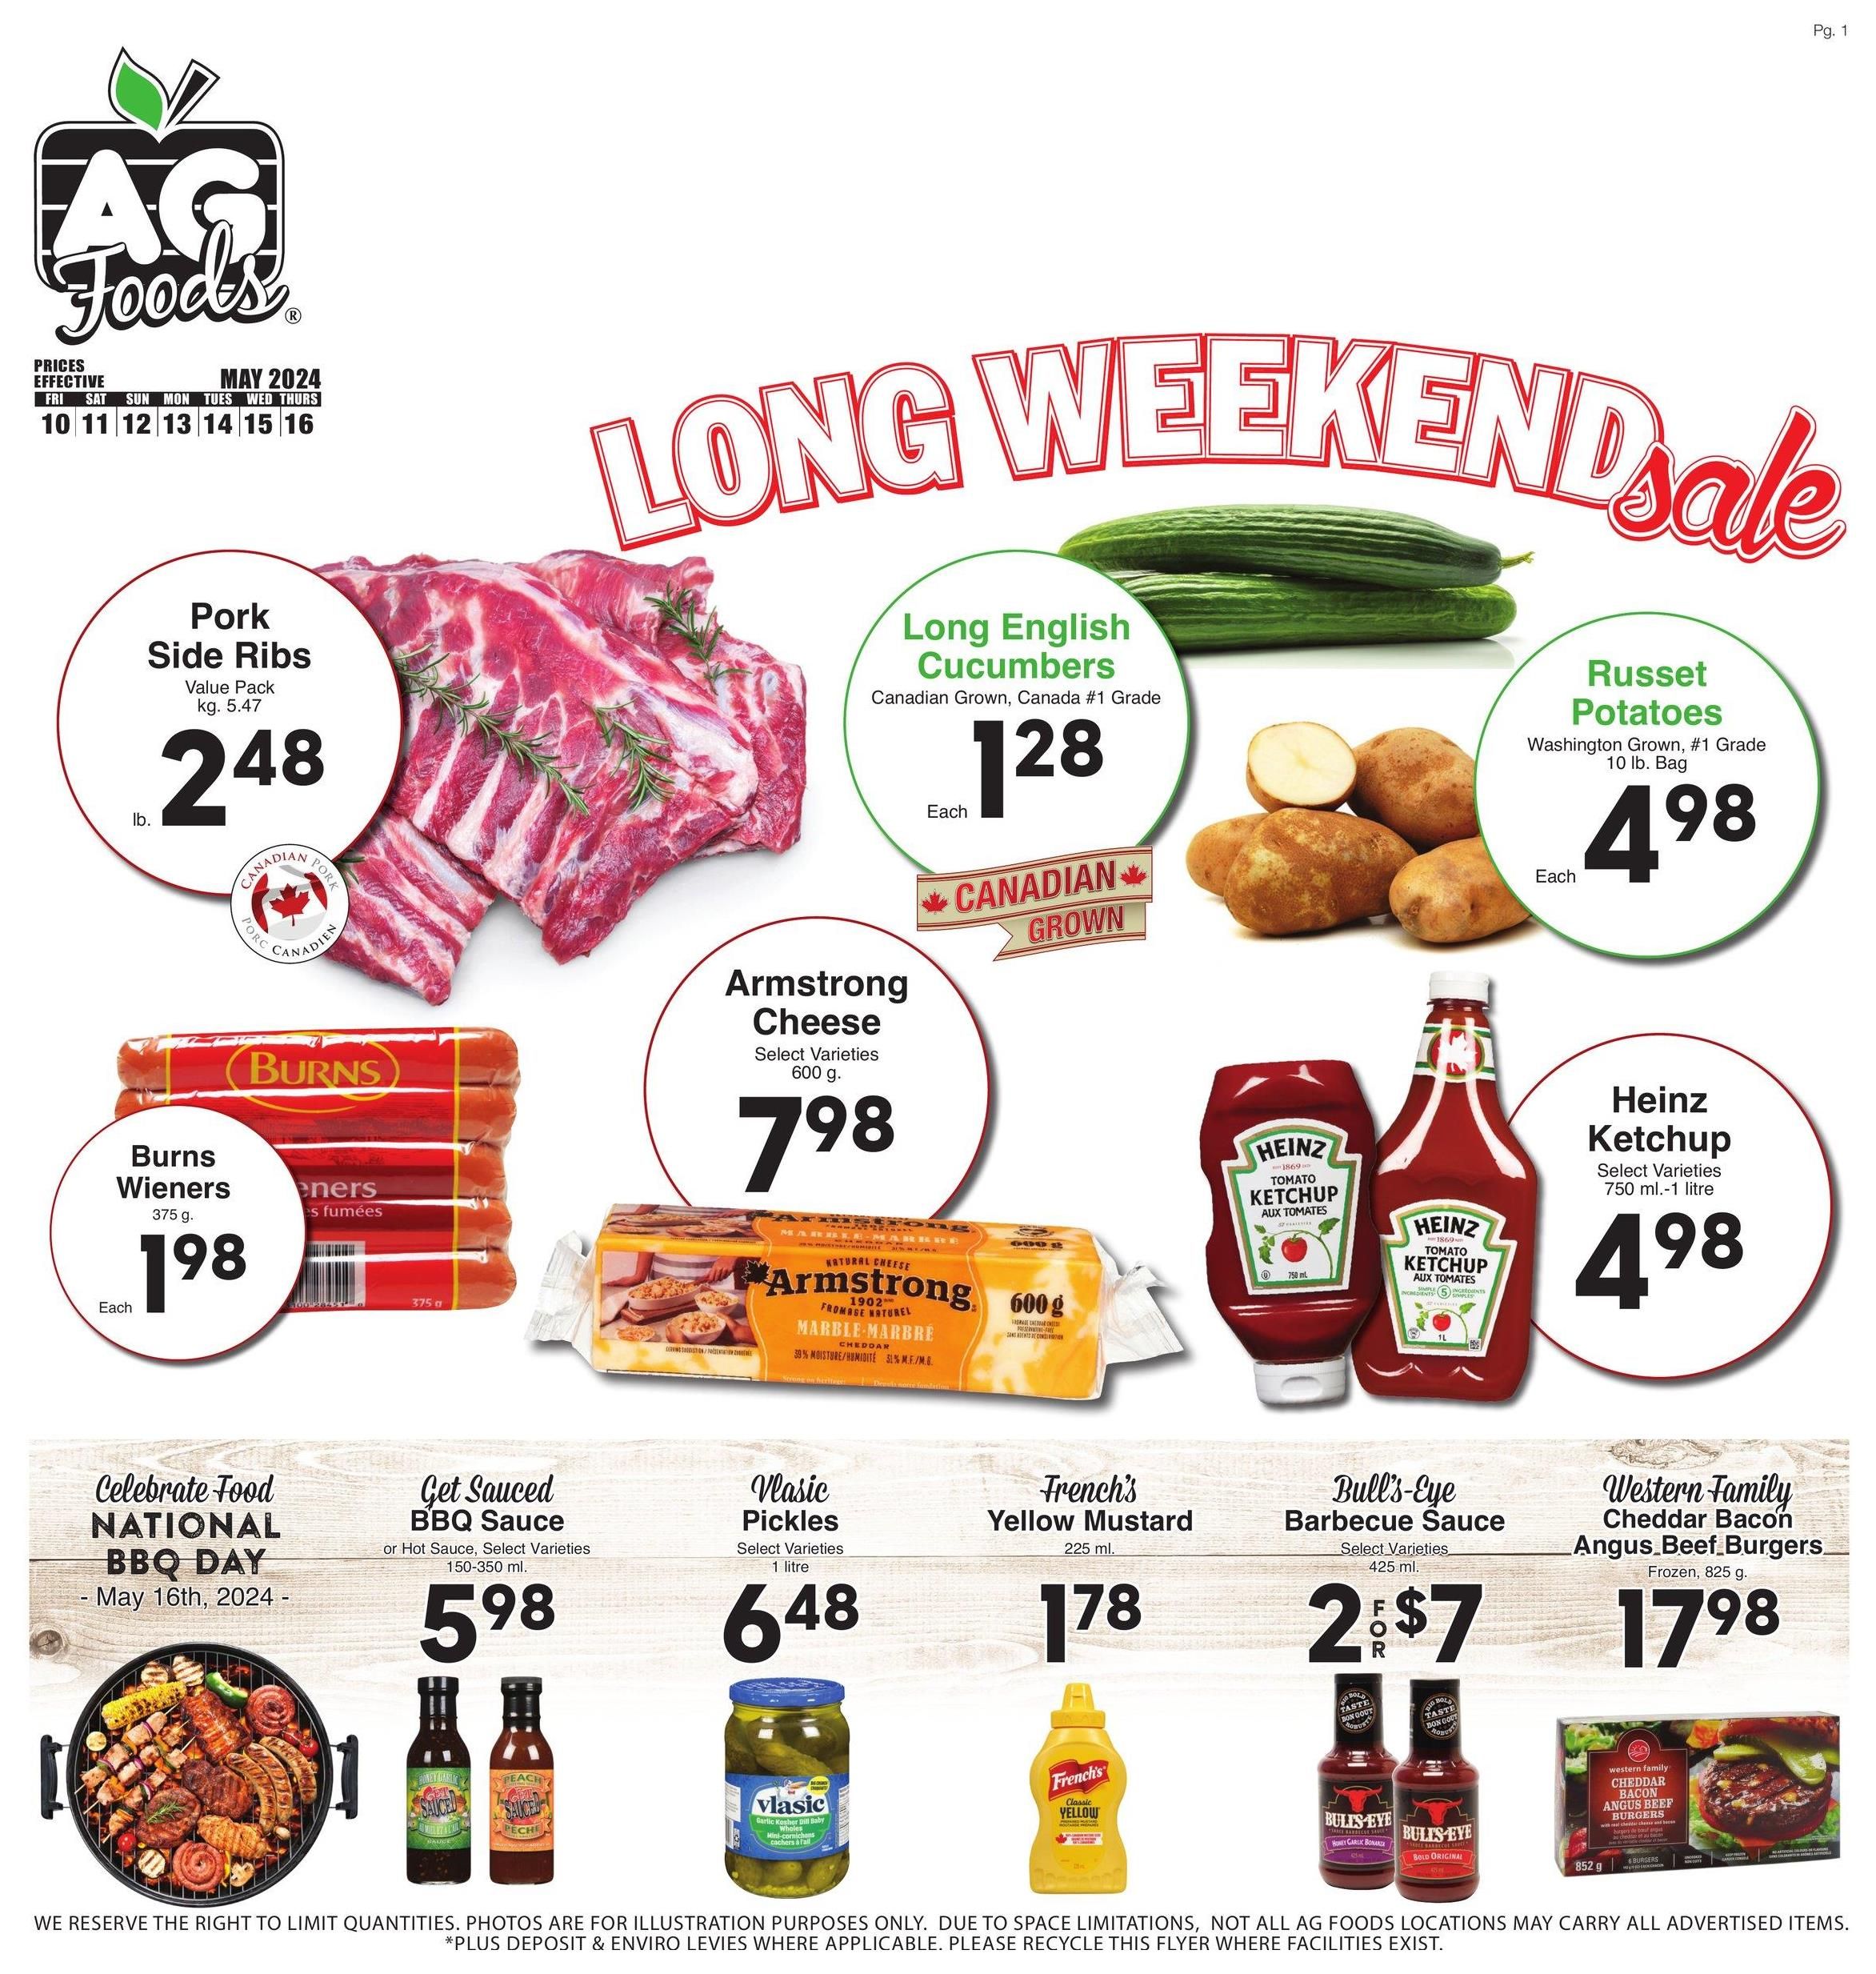 AG Foods - Long Weekend Sale